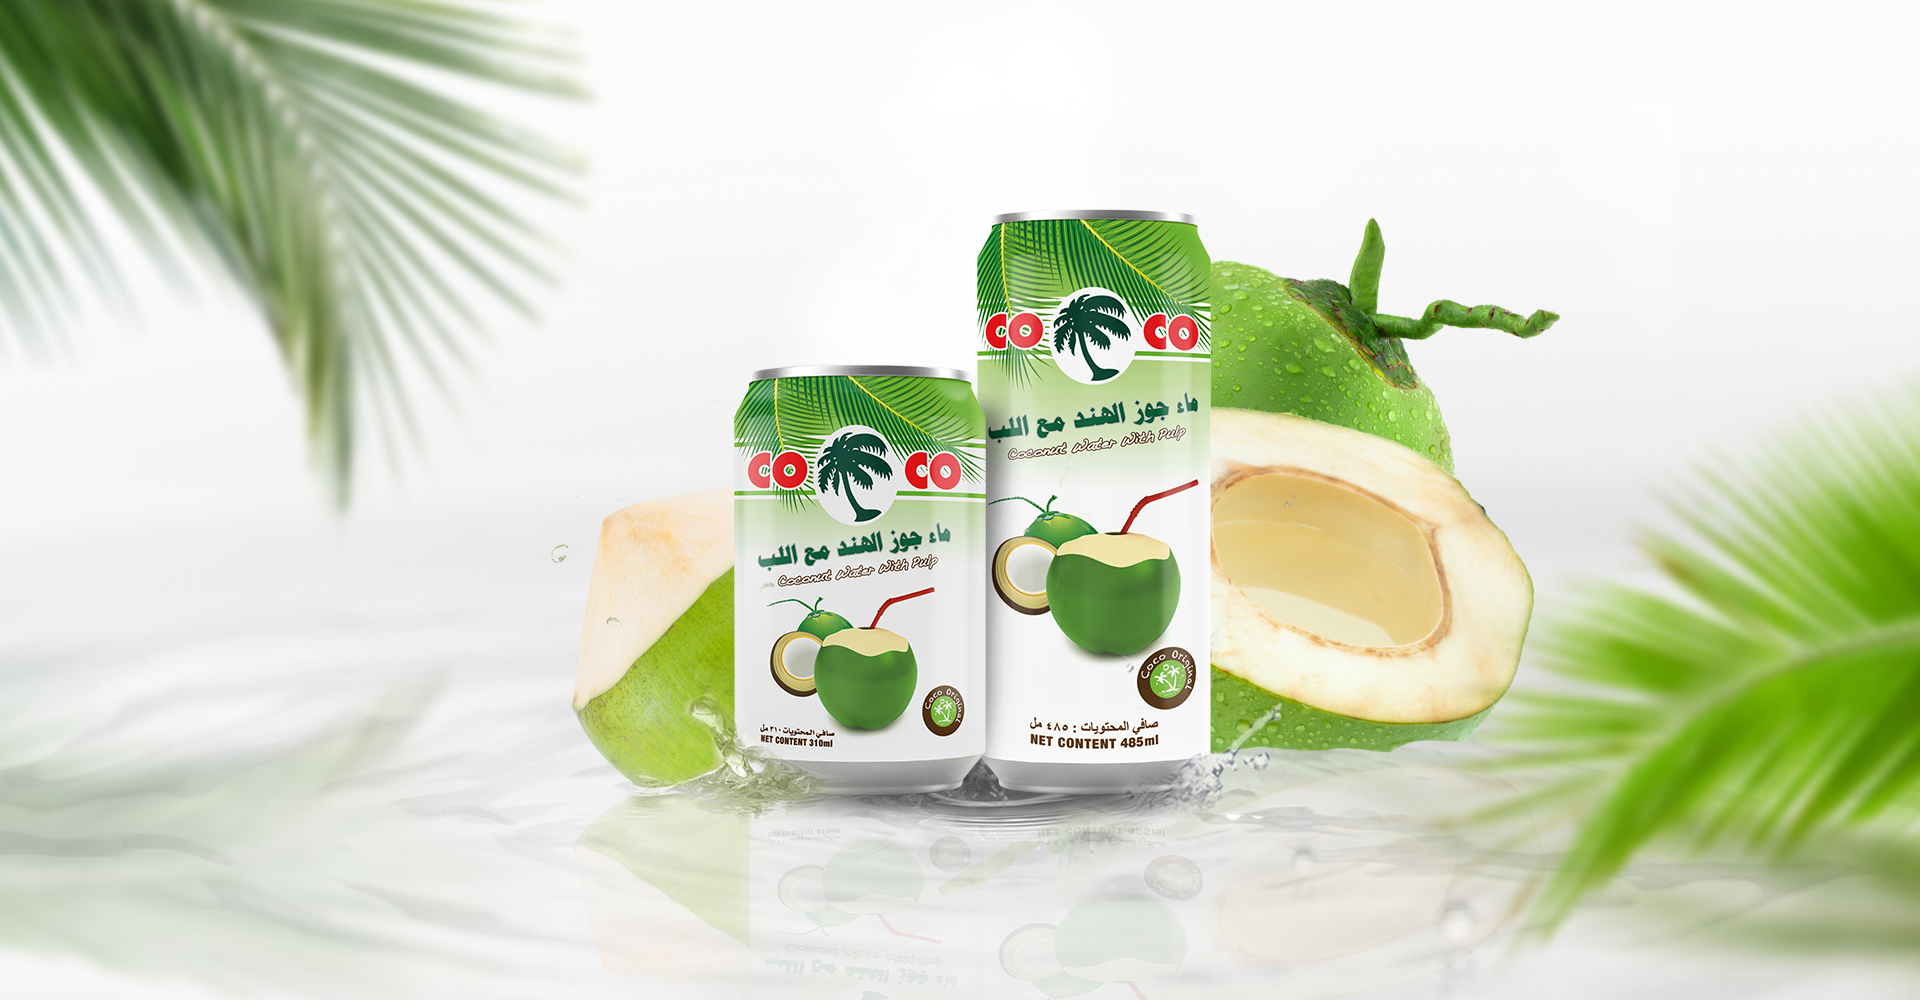 Coco, Simply fresh coconuts